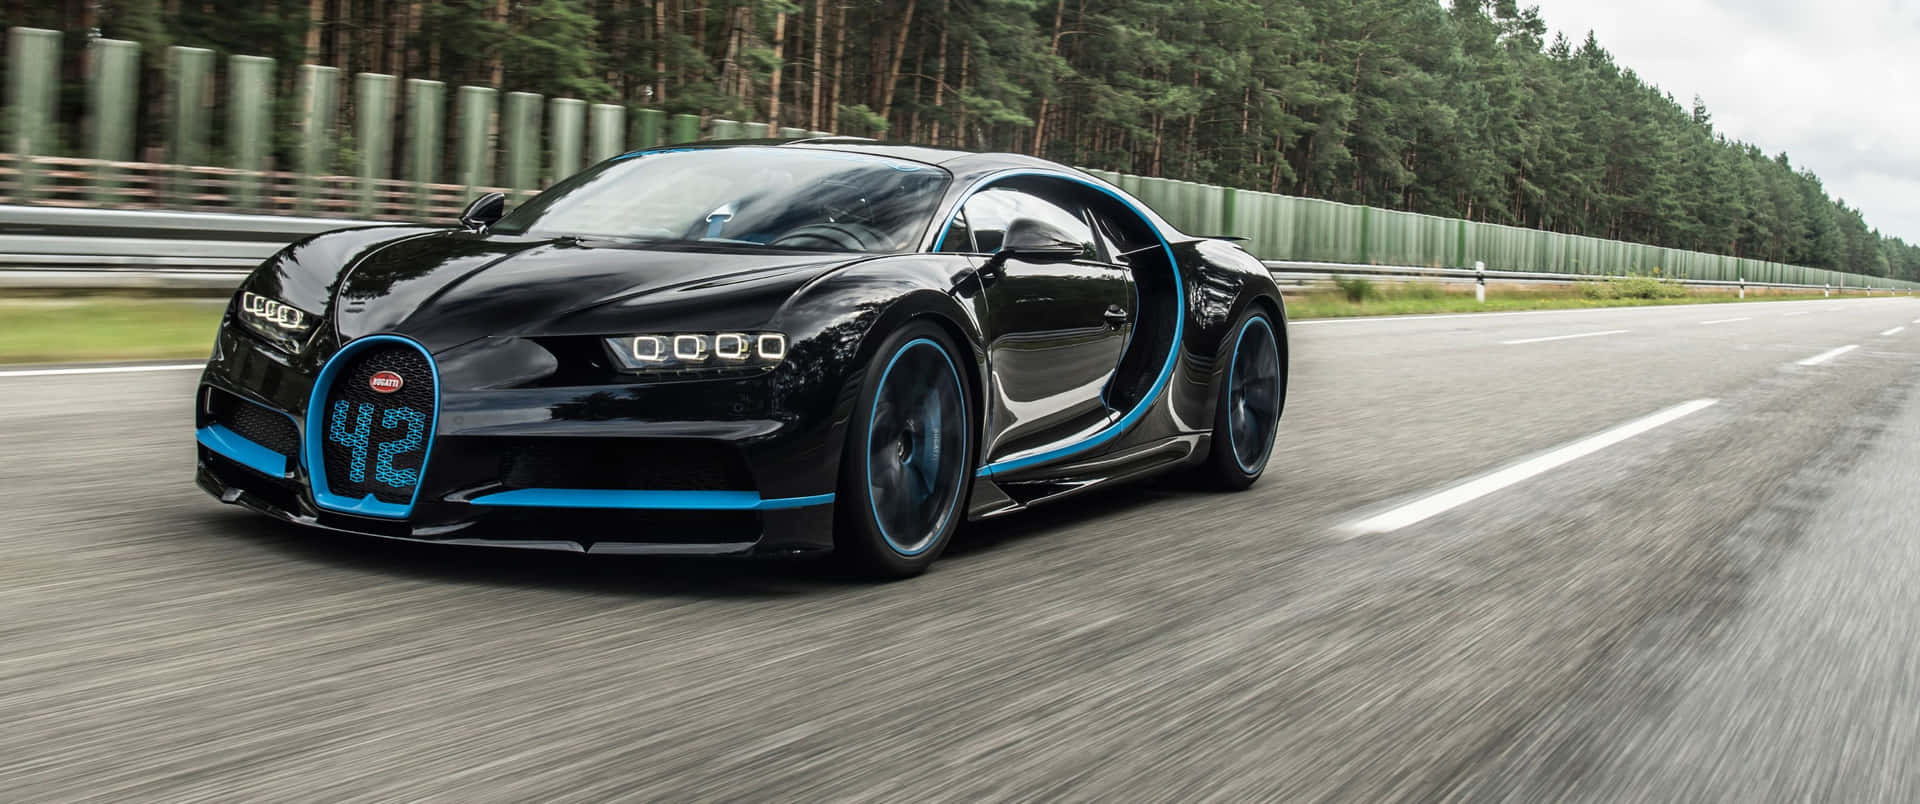 Ellujo Clásico De Bugatti En Su Máxima Expresión.